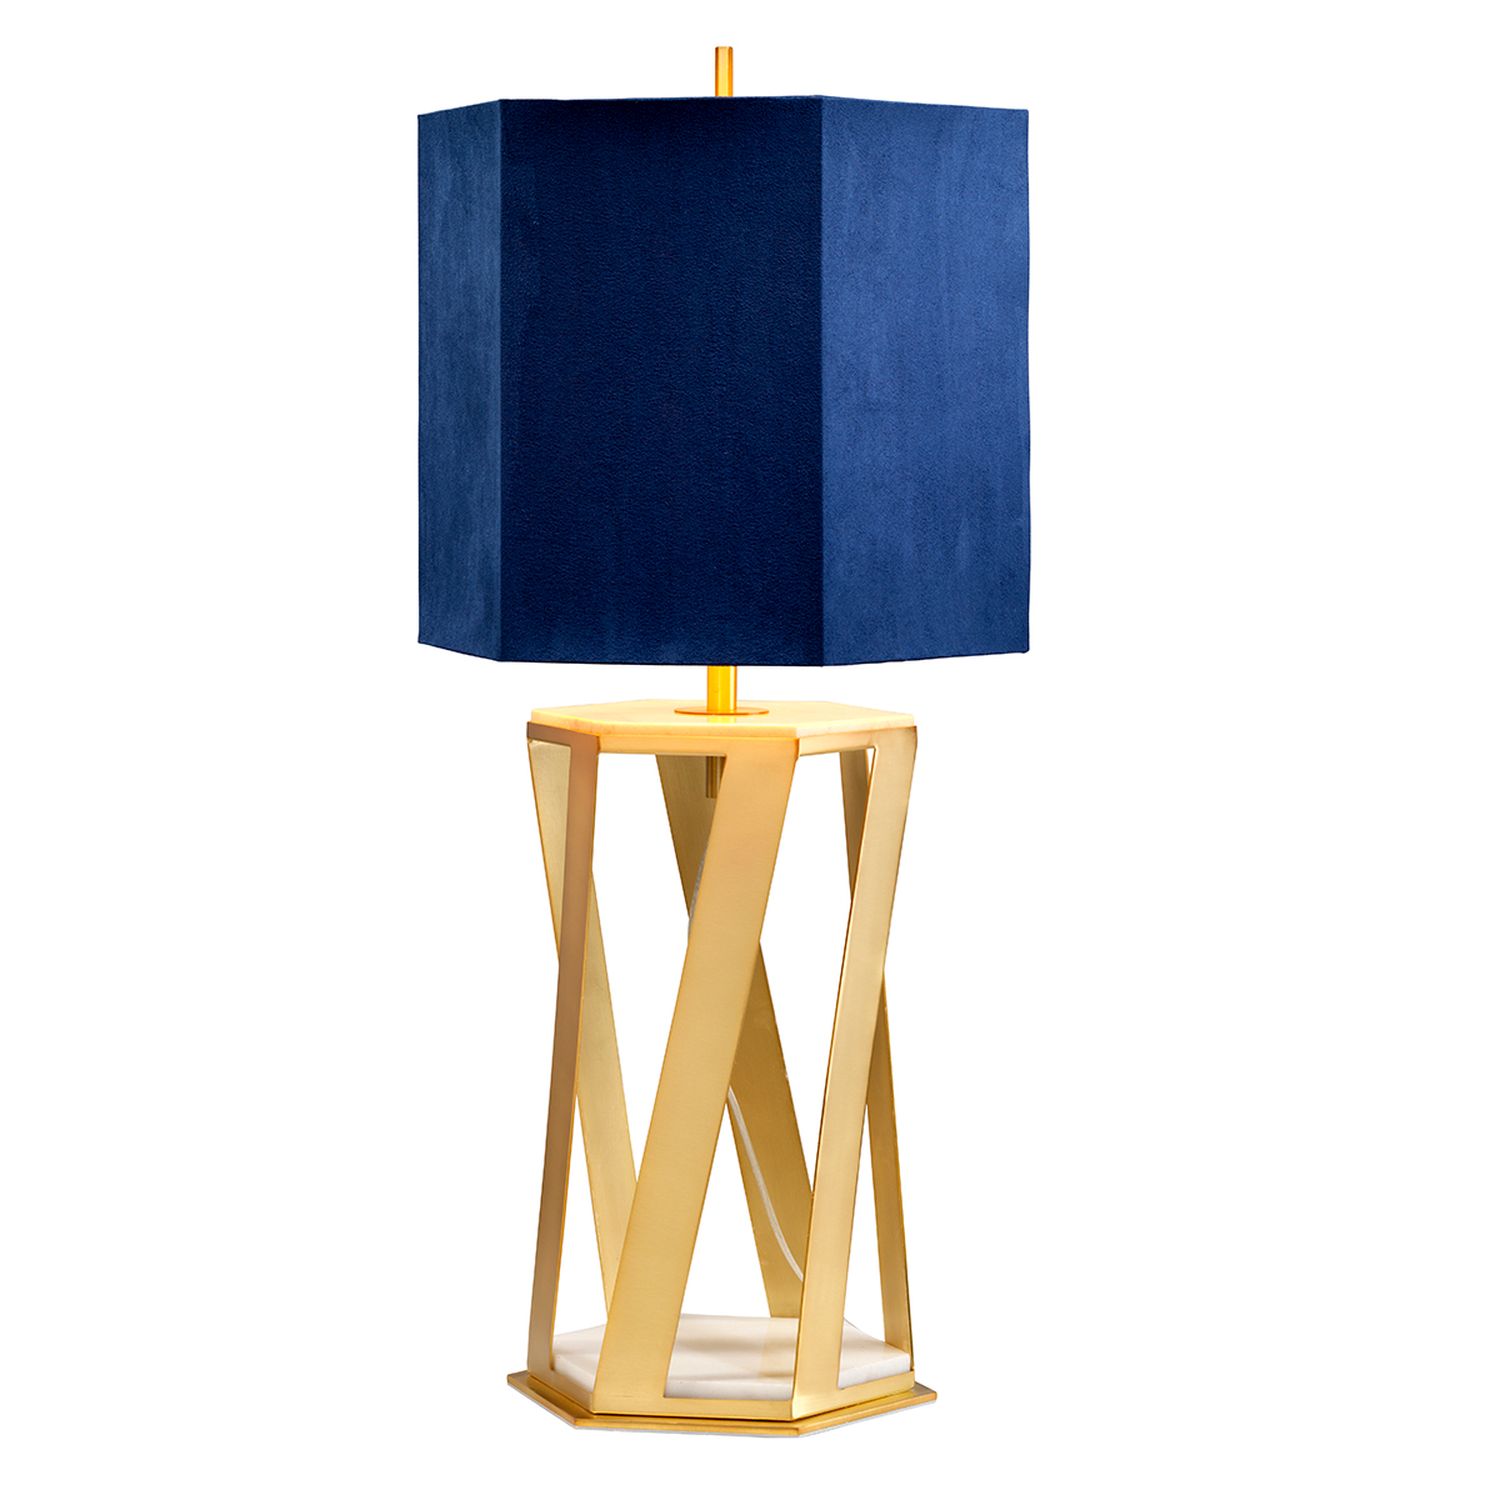 Tischlampe Design Gold Blau Marmor Fuß 87cm hoch